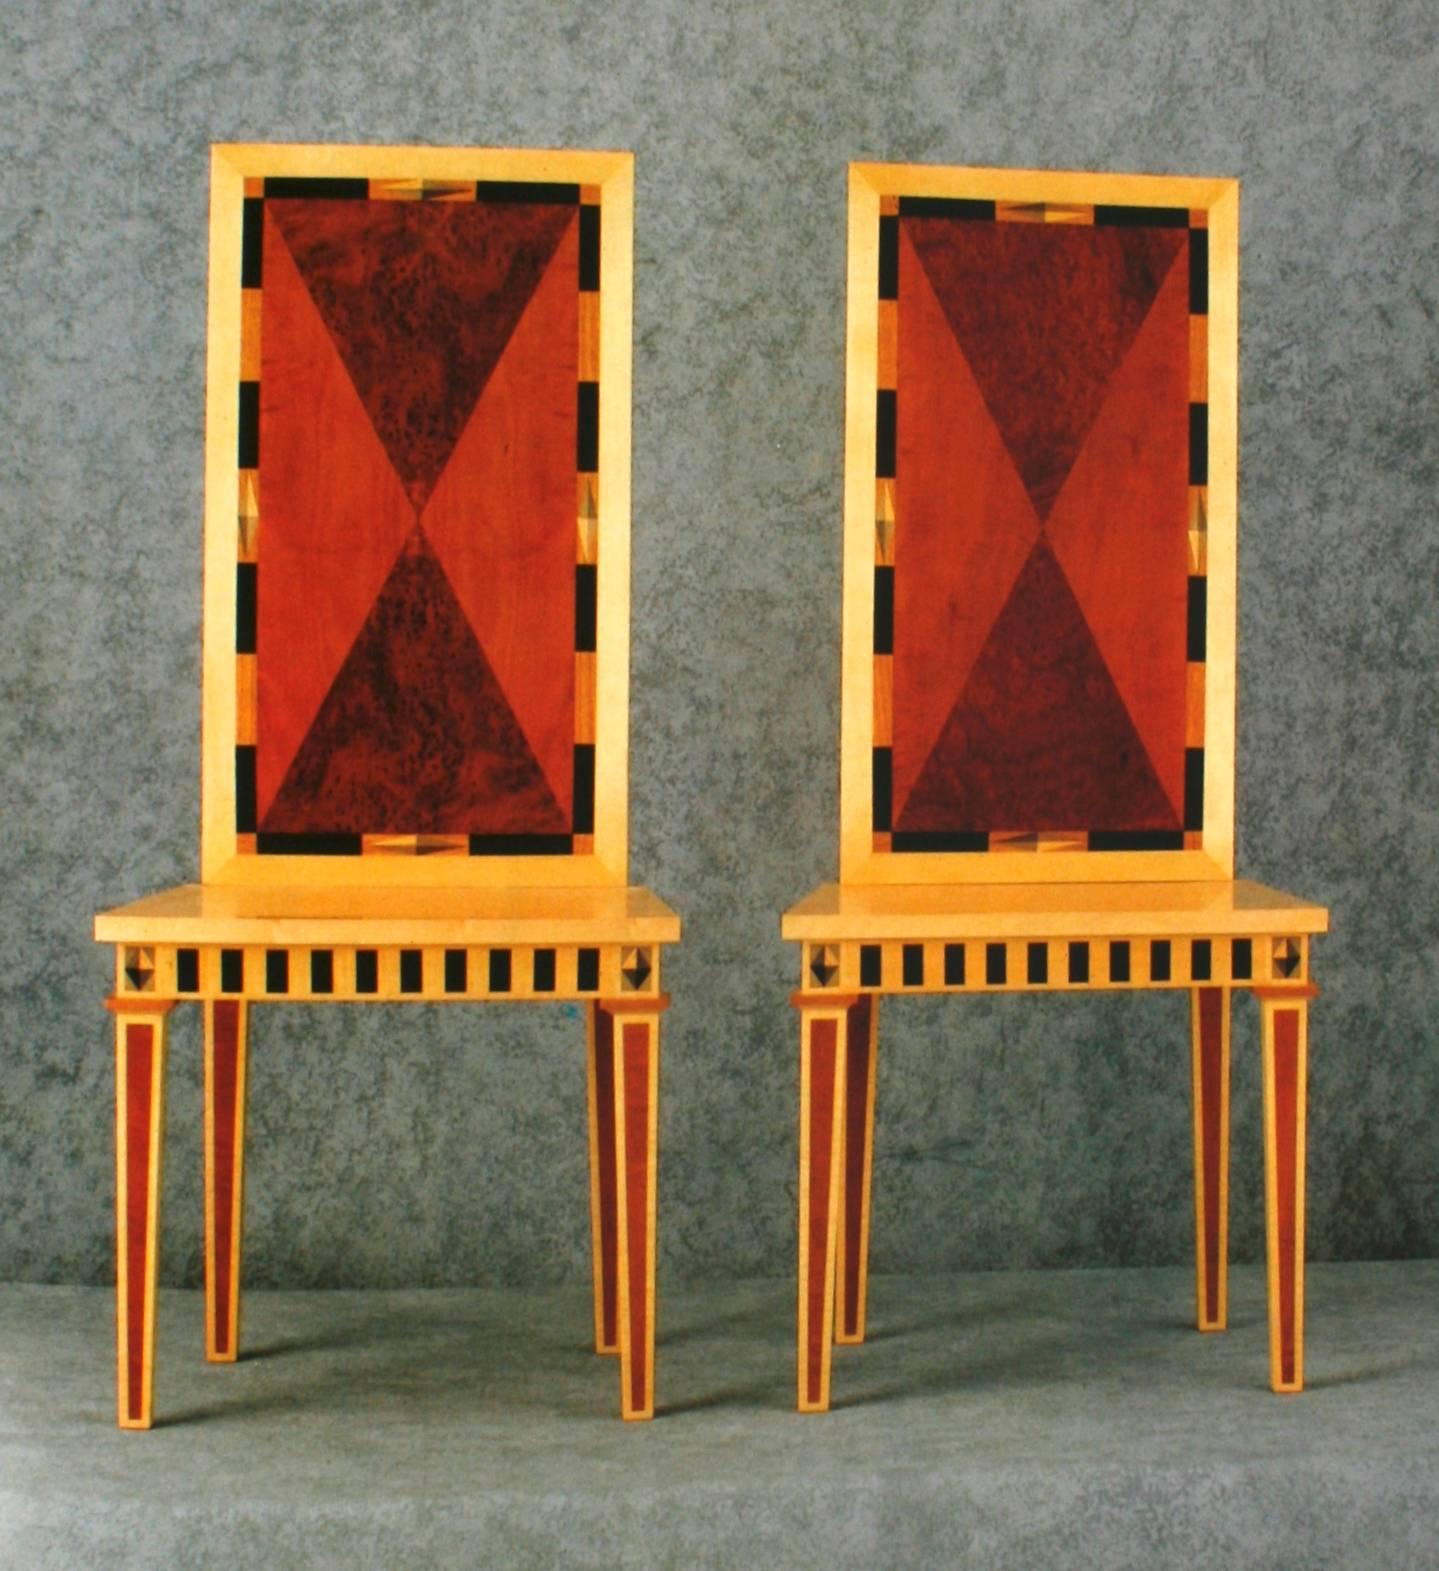 classical furniture david armstrong-jones